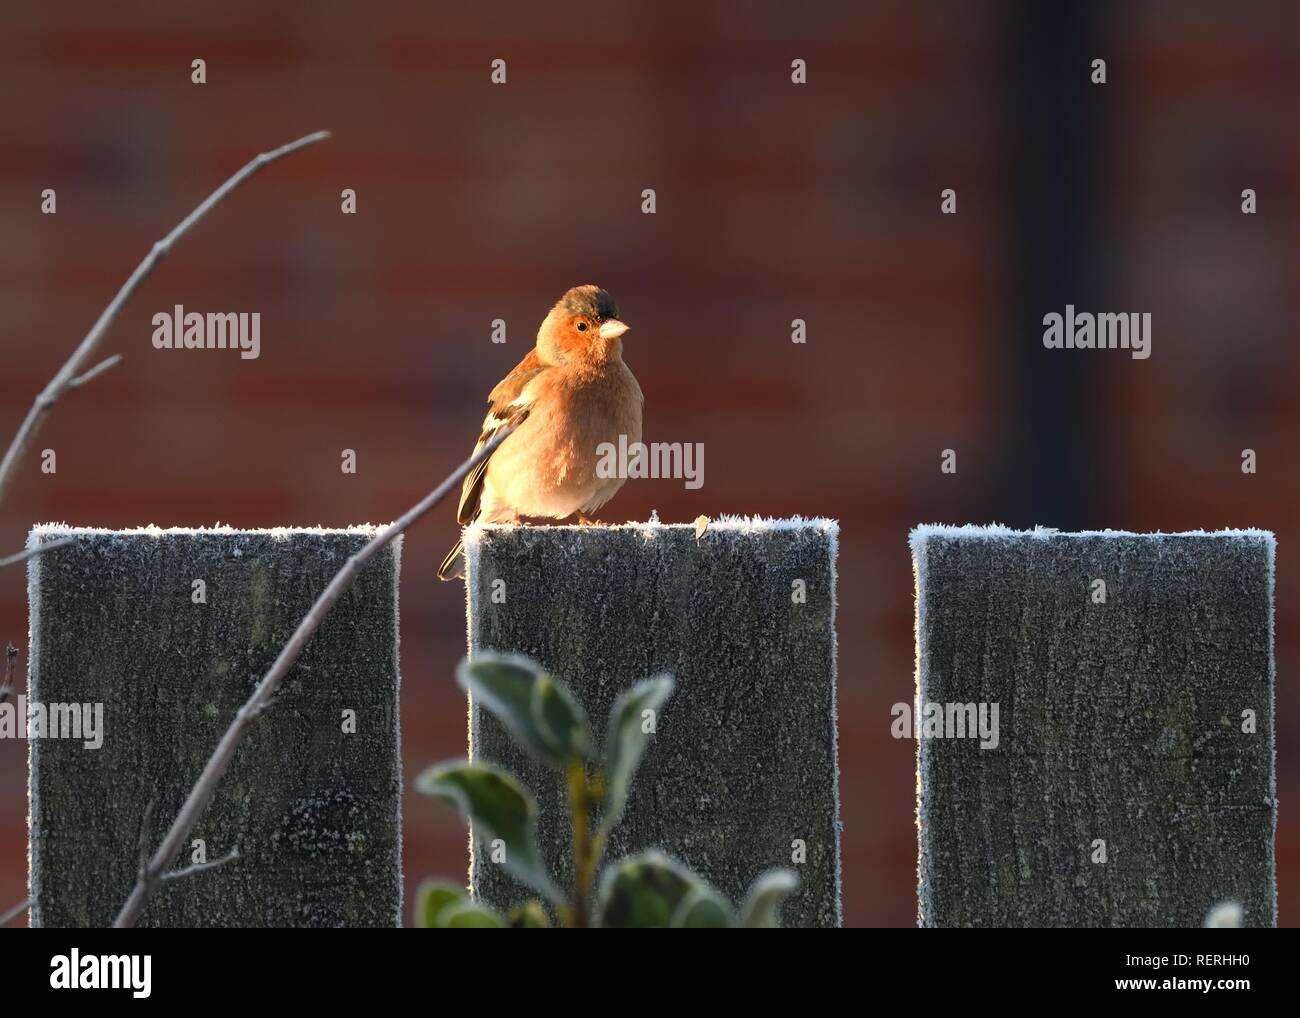 23rd, gennaio 2019. Un Chaffinch (Fringilla coelebs) raccoglie calore dal sole del mattino seduto su un recinto giardino gelido a Glasgow, Scozia, Regno Unito, Europa Foto Stock